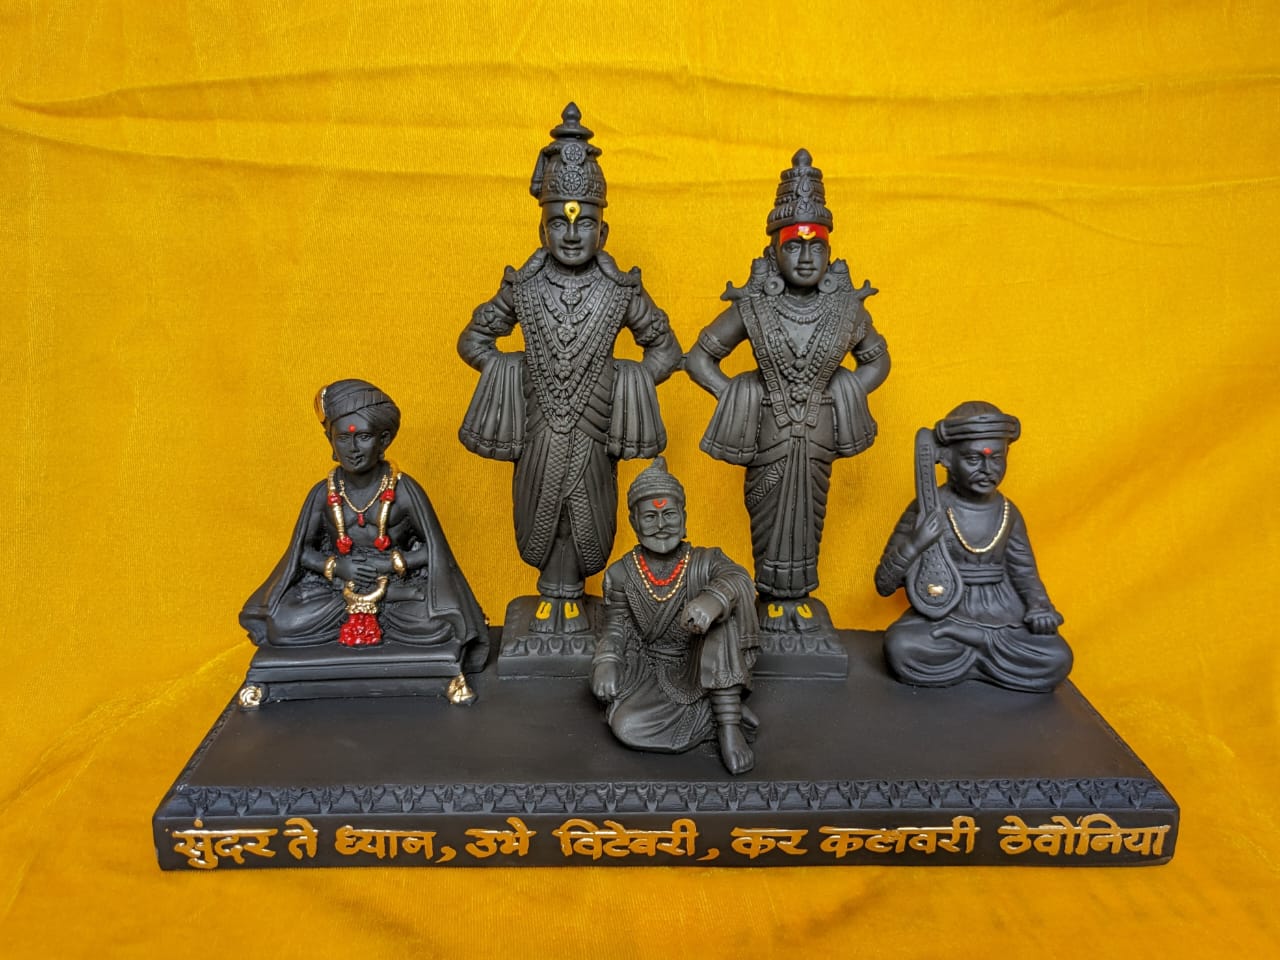 illustration of chhatrapati shivaji maharaj